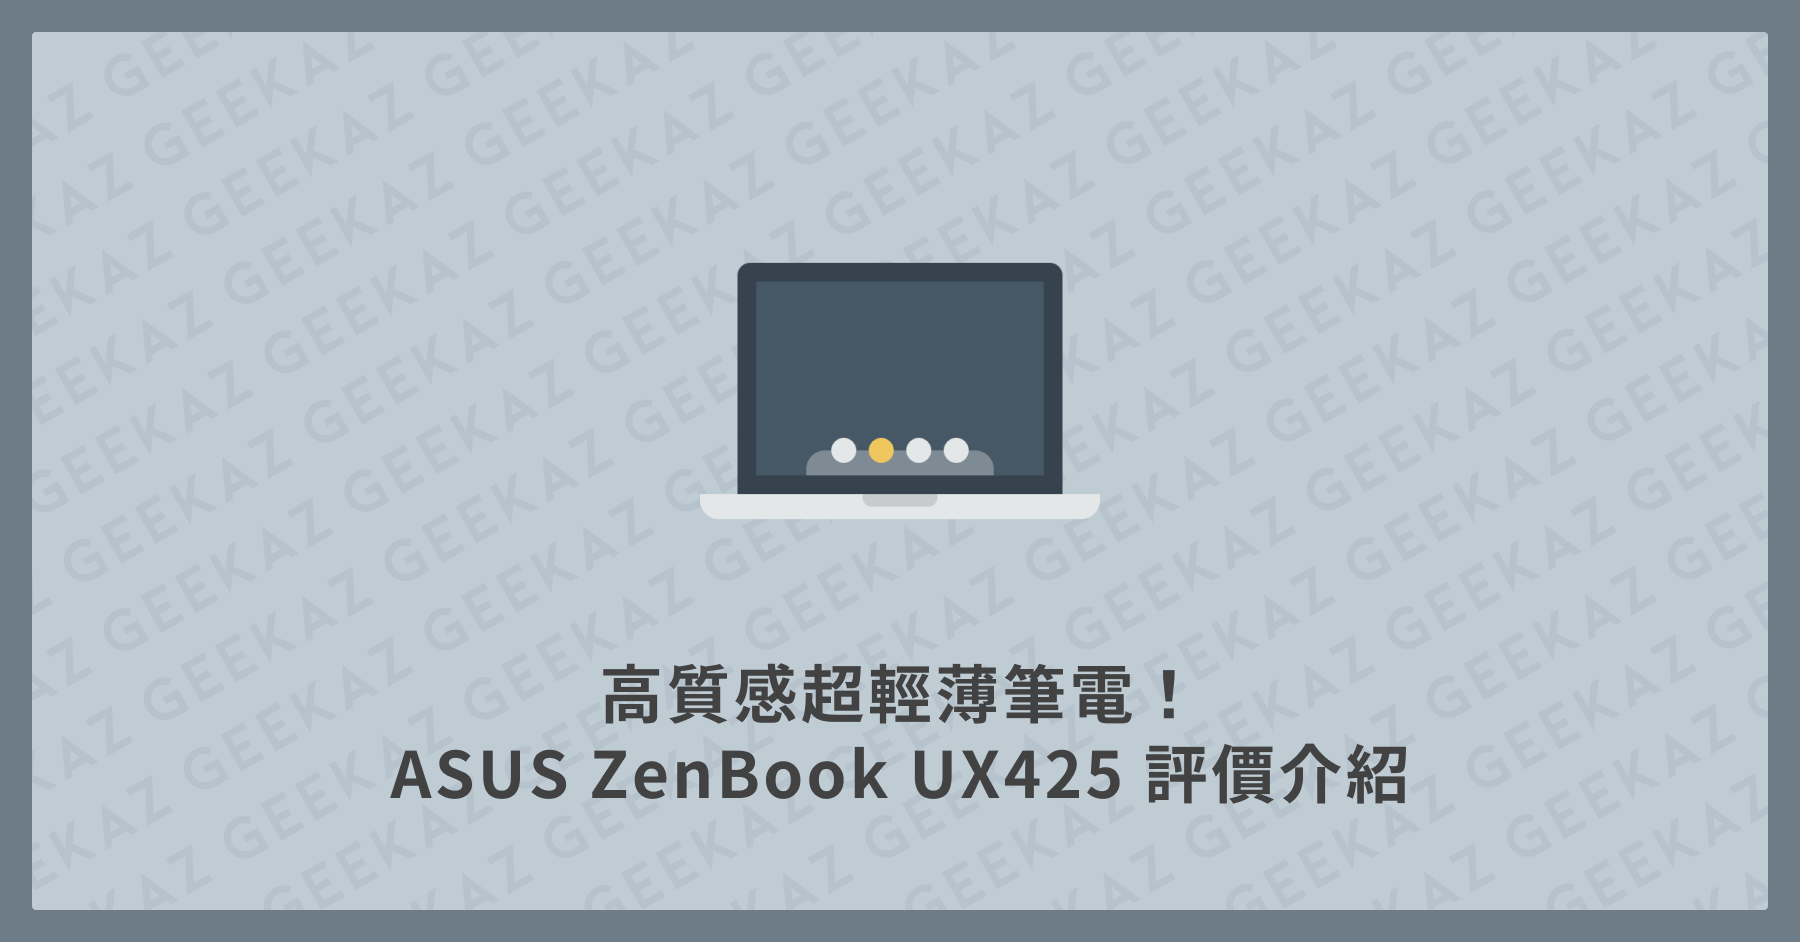 ASUS ZenBook UX425 評價